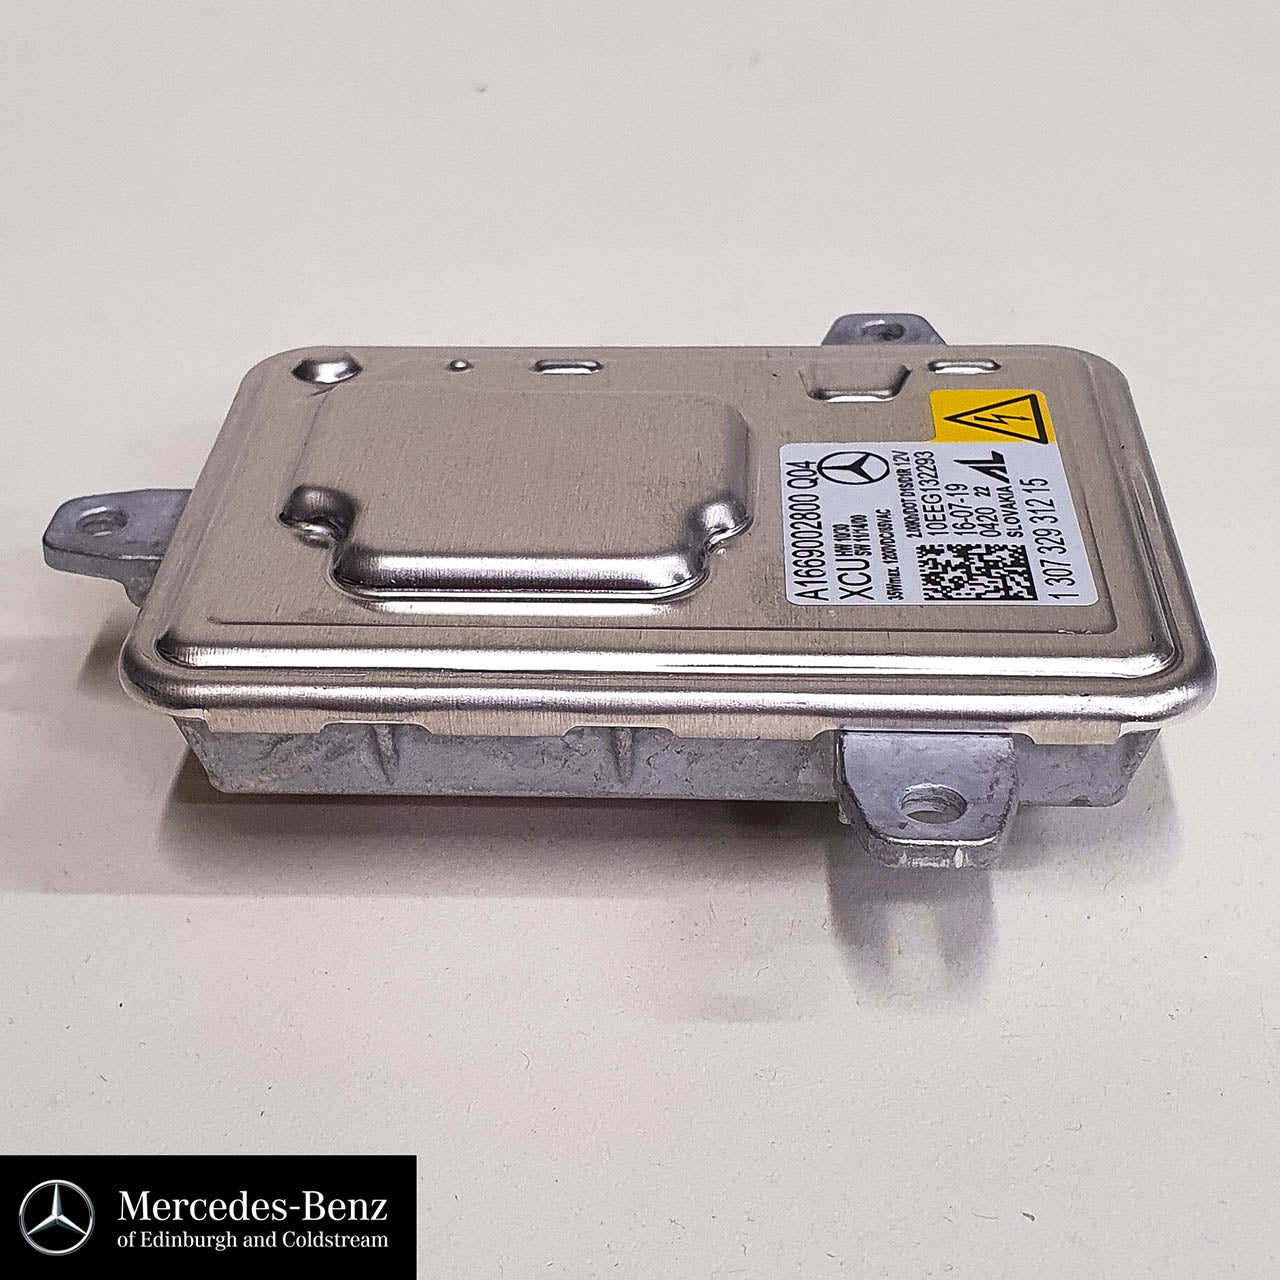 Genuine Mercedes-Benz control unit Xenon headlight ballast